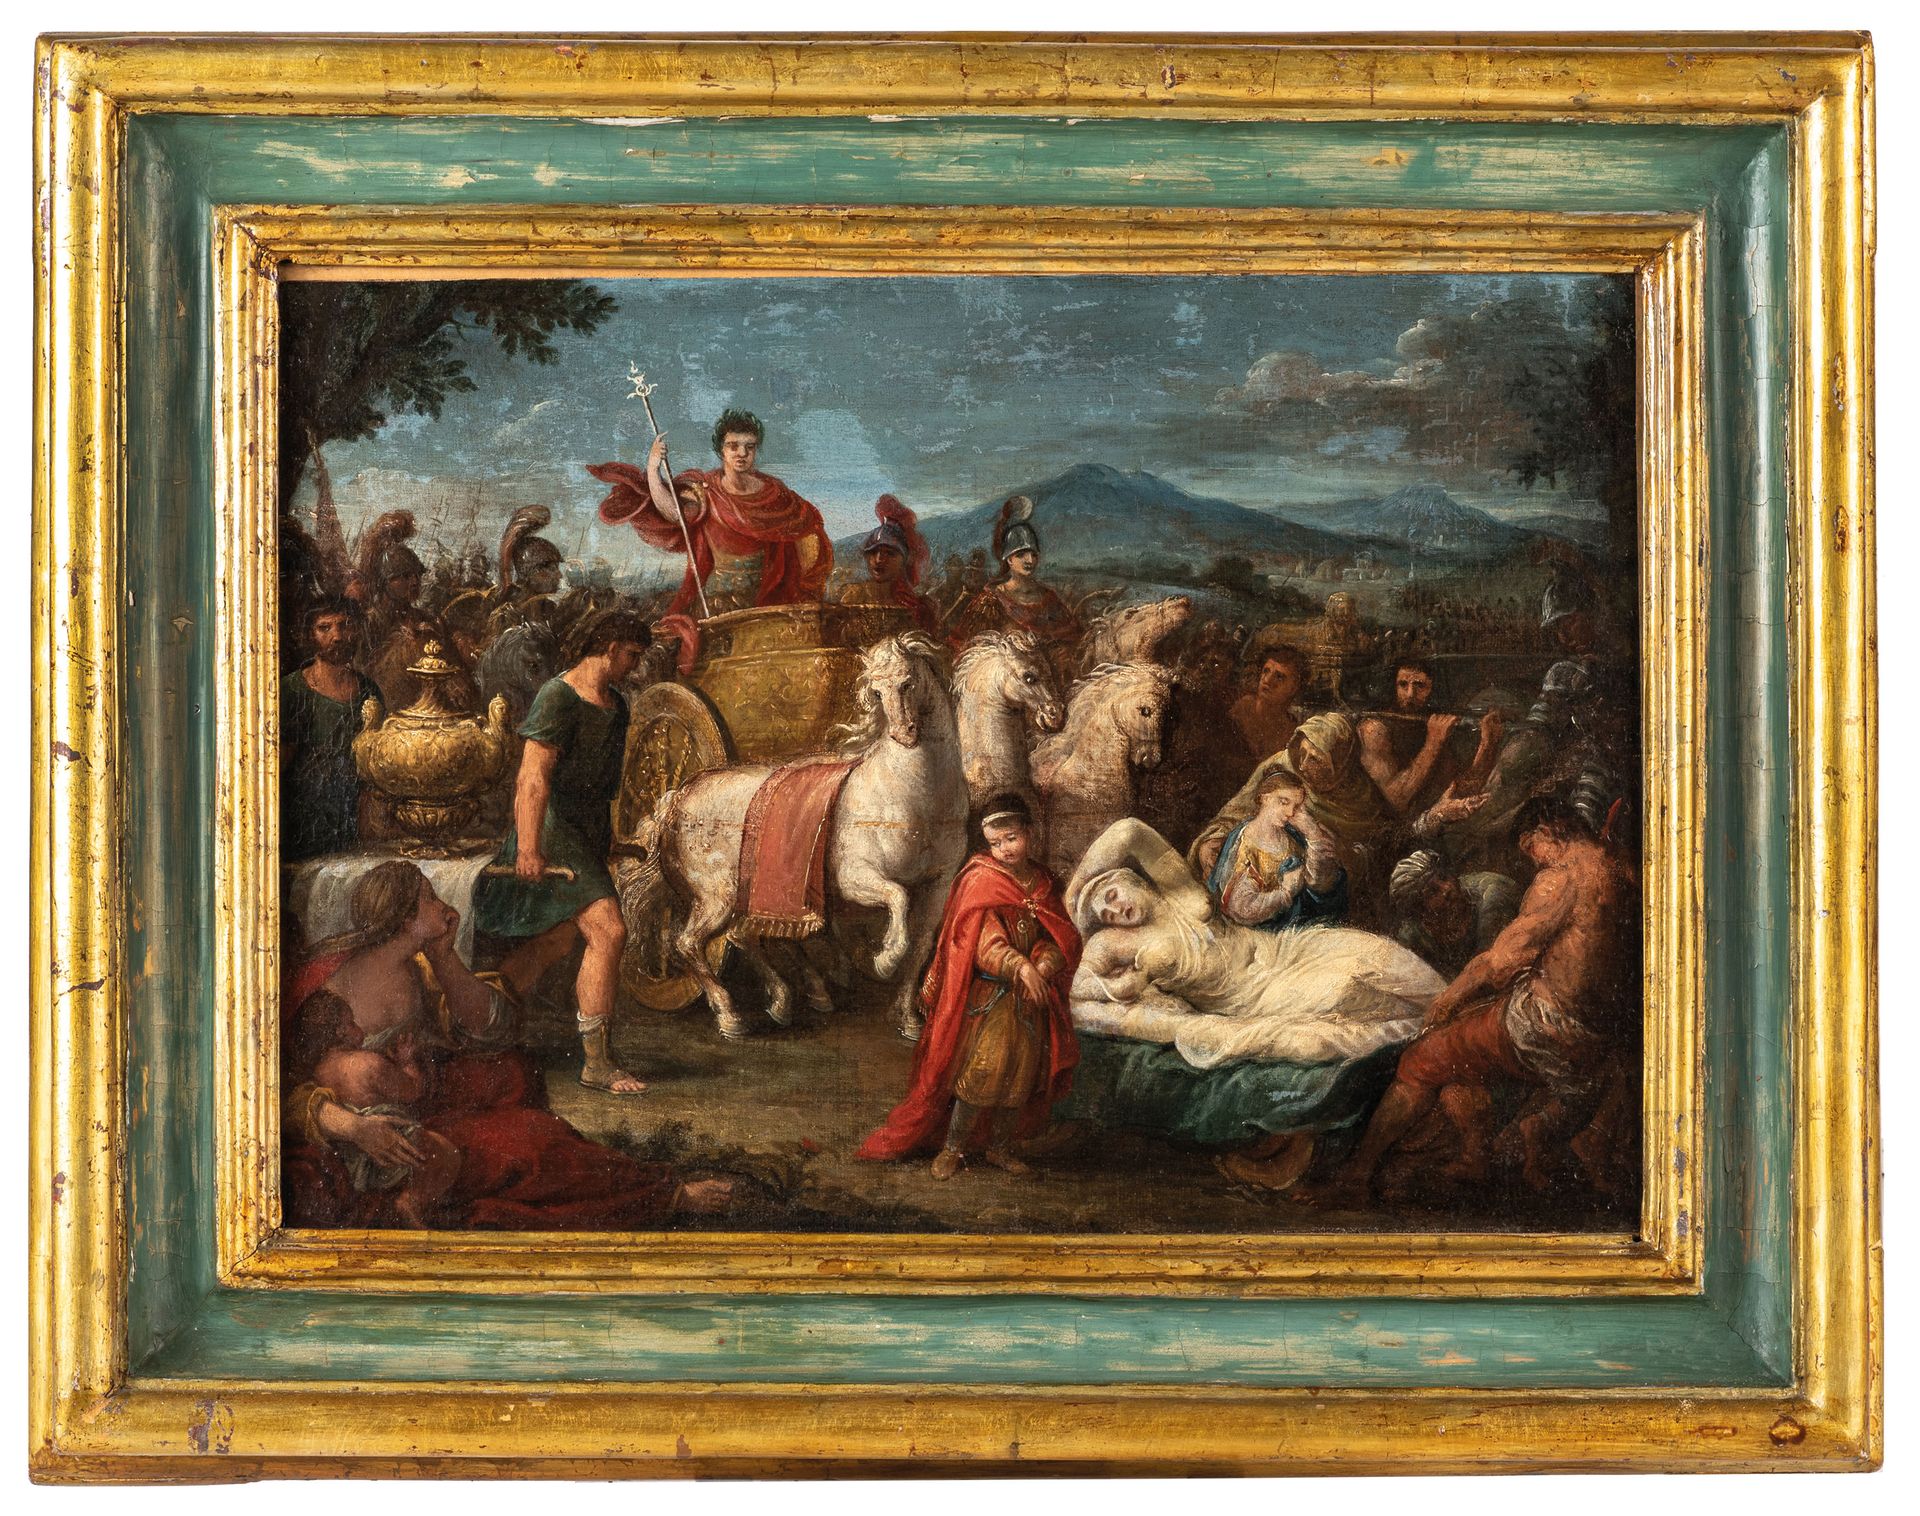 PITTORE DEL XVIII SECOLO Triunfo romano
Óleo sobre lienzo, 45,5X64,5 cm